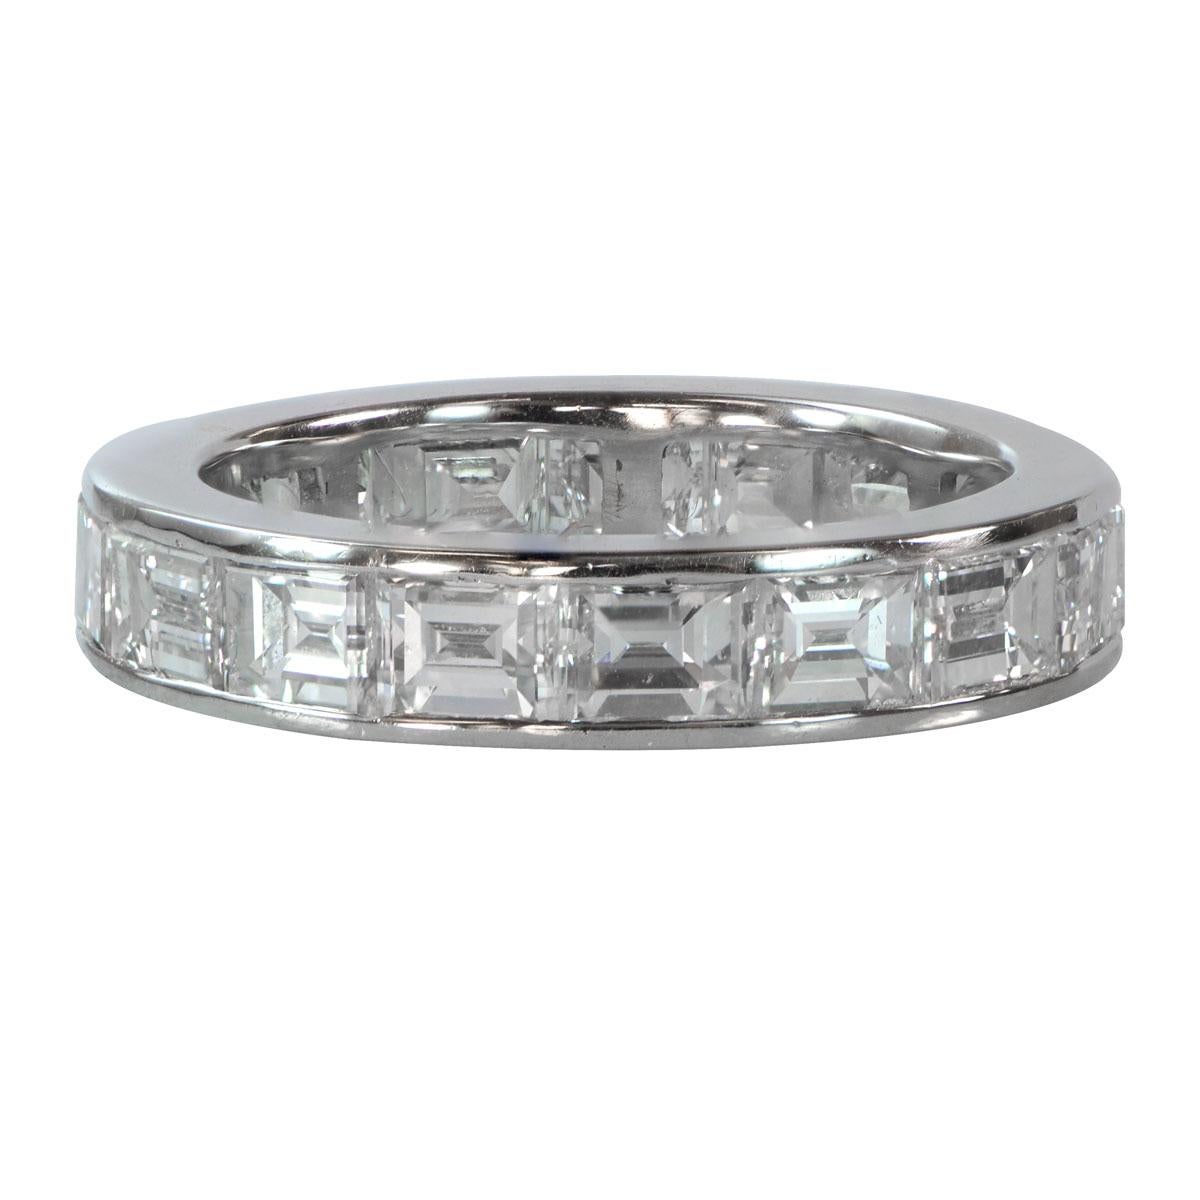 Une alliance à couper le souffle, ornée de diamants de taille émeraude, sertis en canal dans un magnifique anneau d'éternité en platine. Le bracelet présente une largeur de 4 mm, ce qui lui confère une allure intemporelle et élégante. Le poids